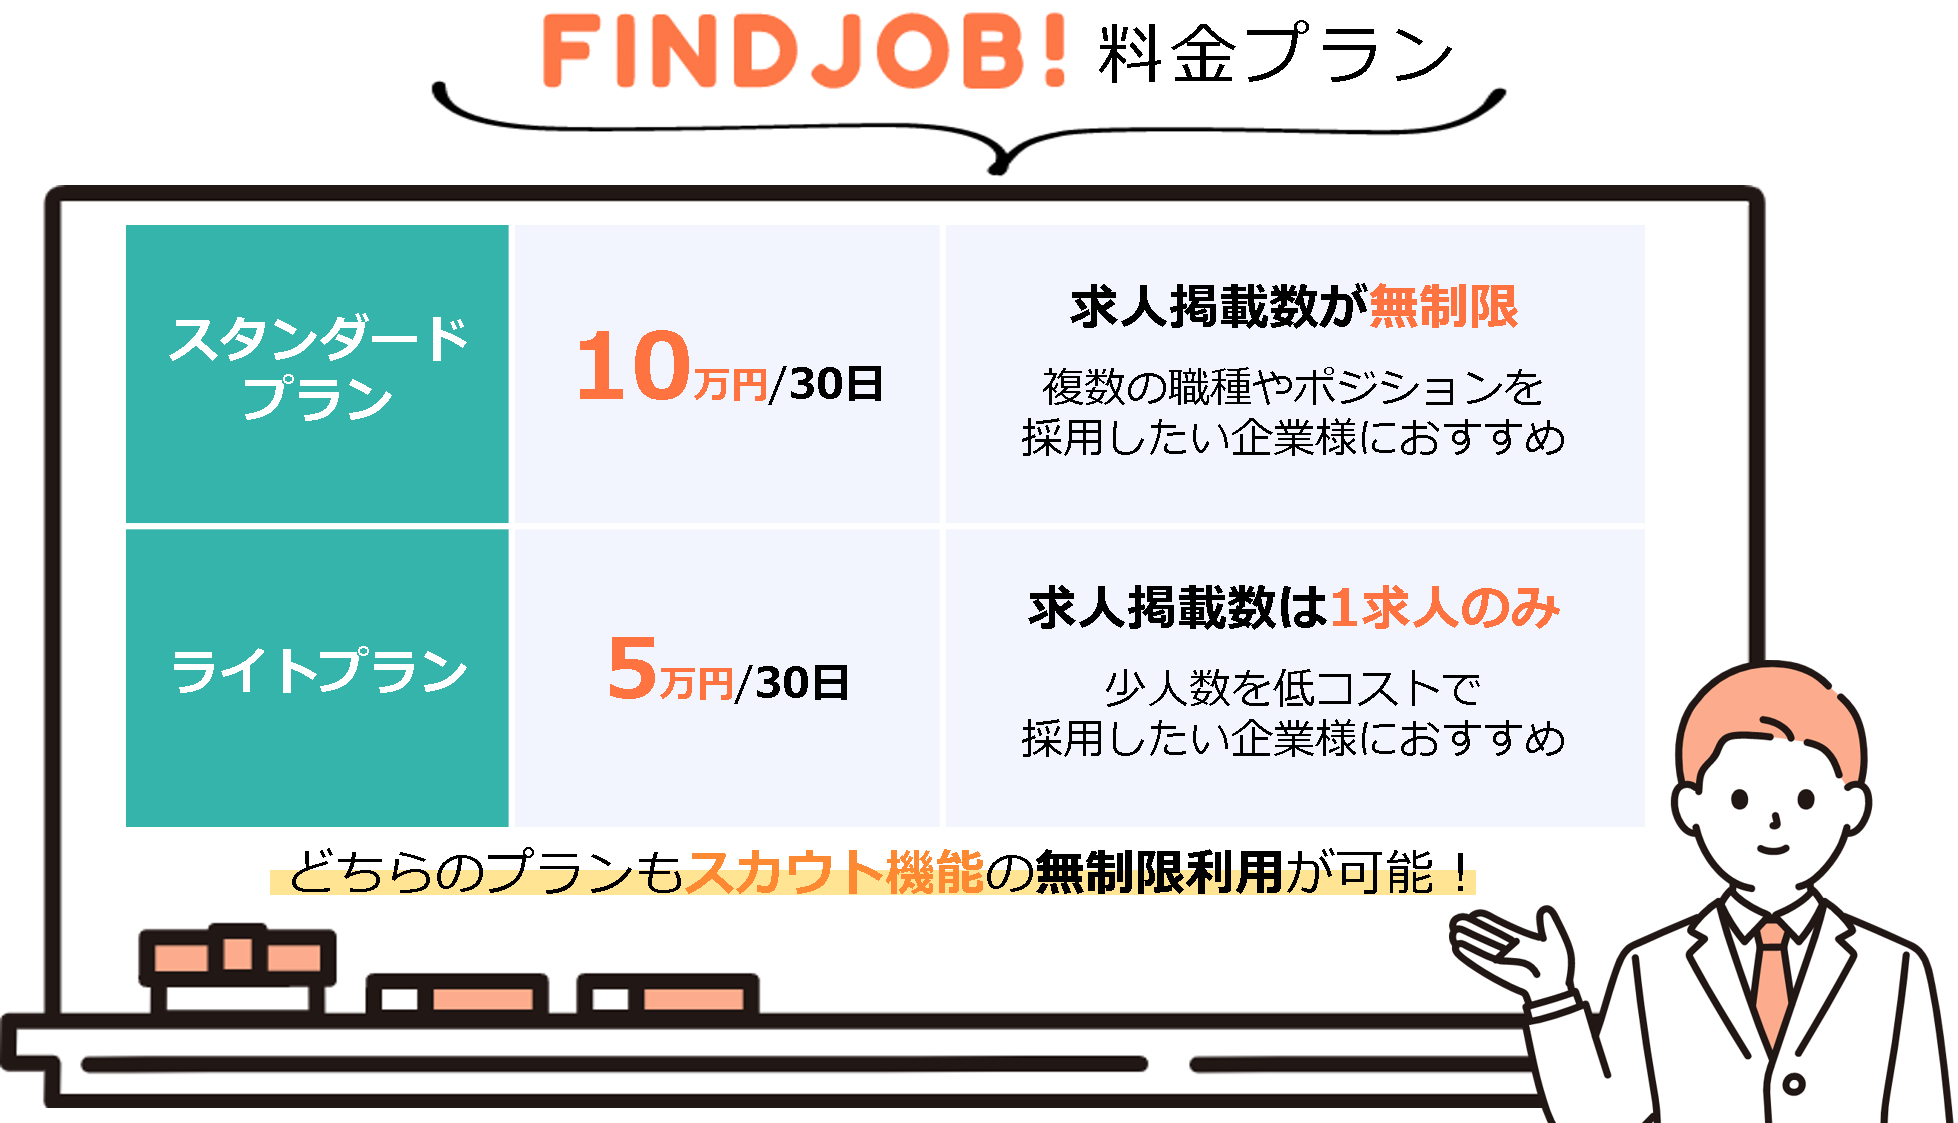 FIND JOB! の掲載料金